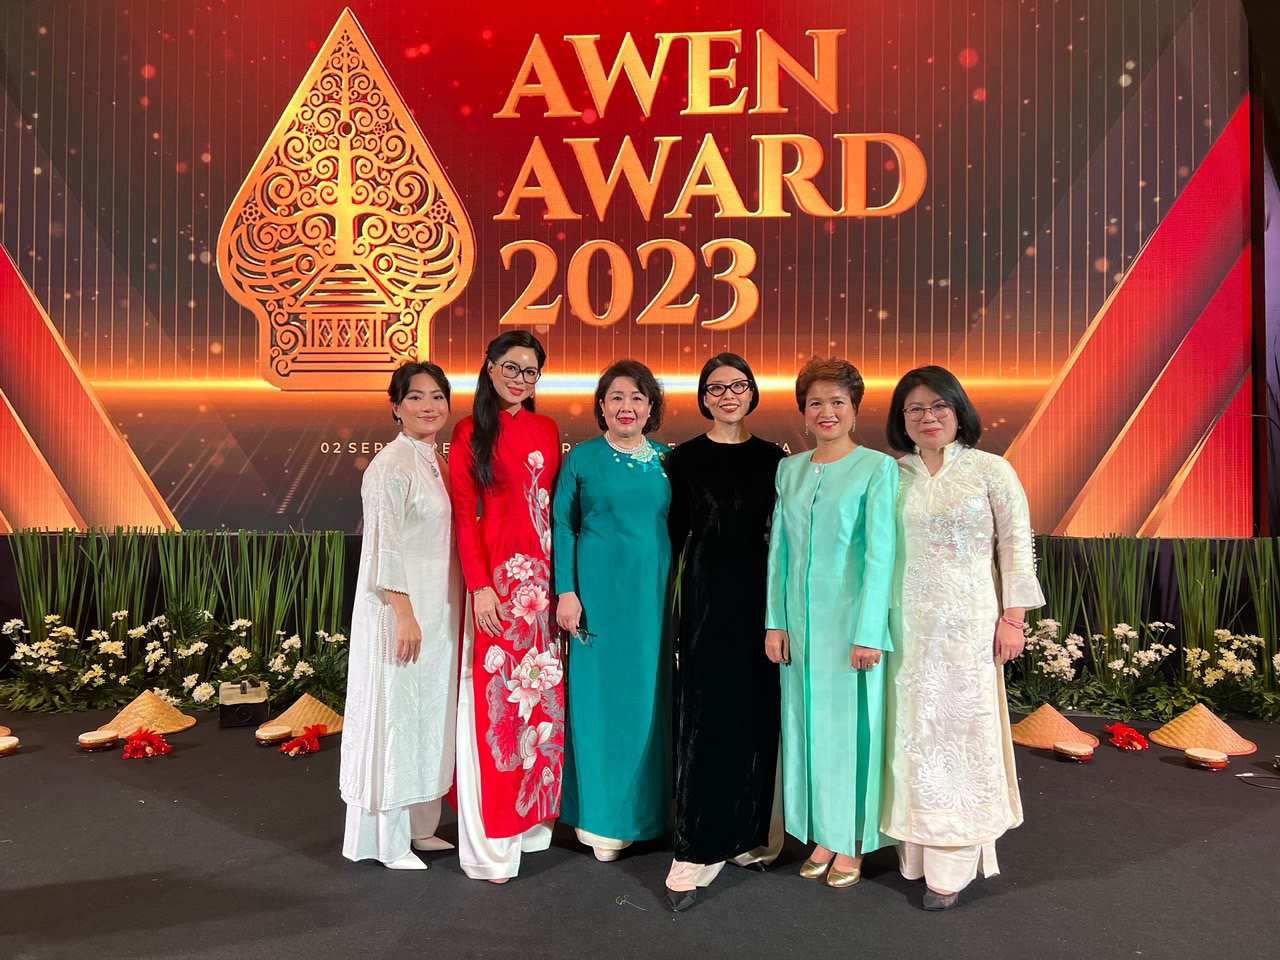 Việt Nam có 3 nữ doanh nhân đoạt giải nữ doanh nhân ASEAN tại AWEN AWARD 2023